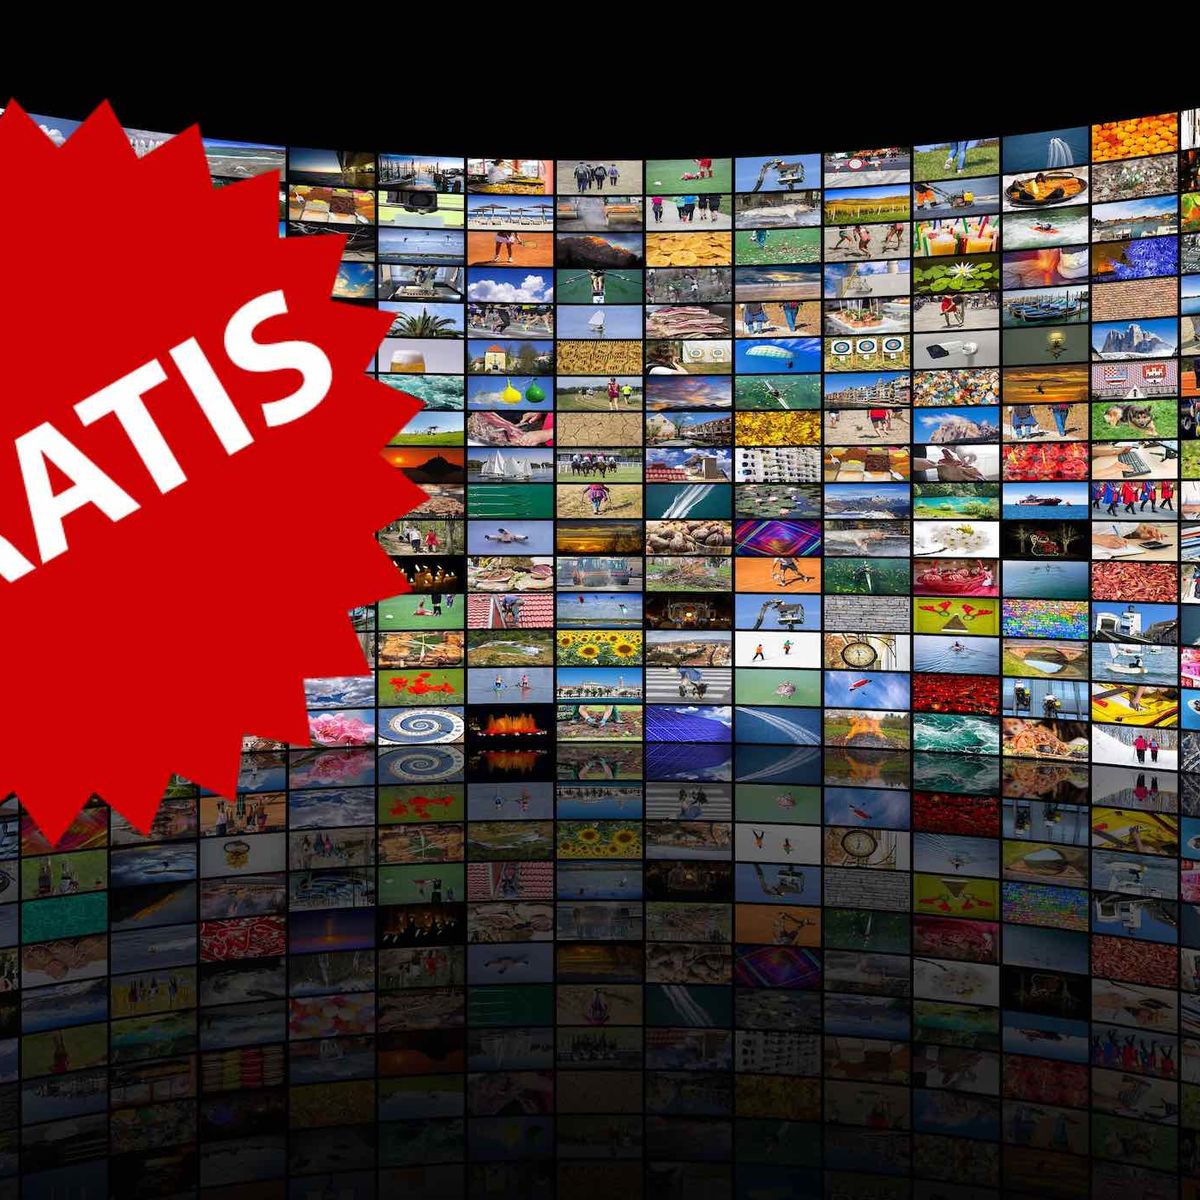 Listas IPTV que funcionan siempre para ver gratis miles de canales de todo  el mundo